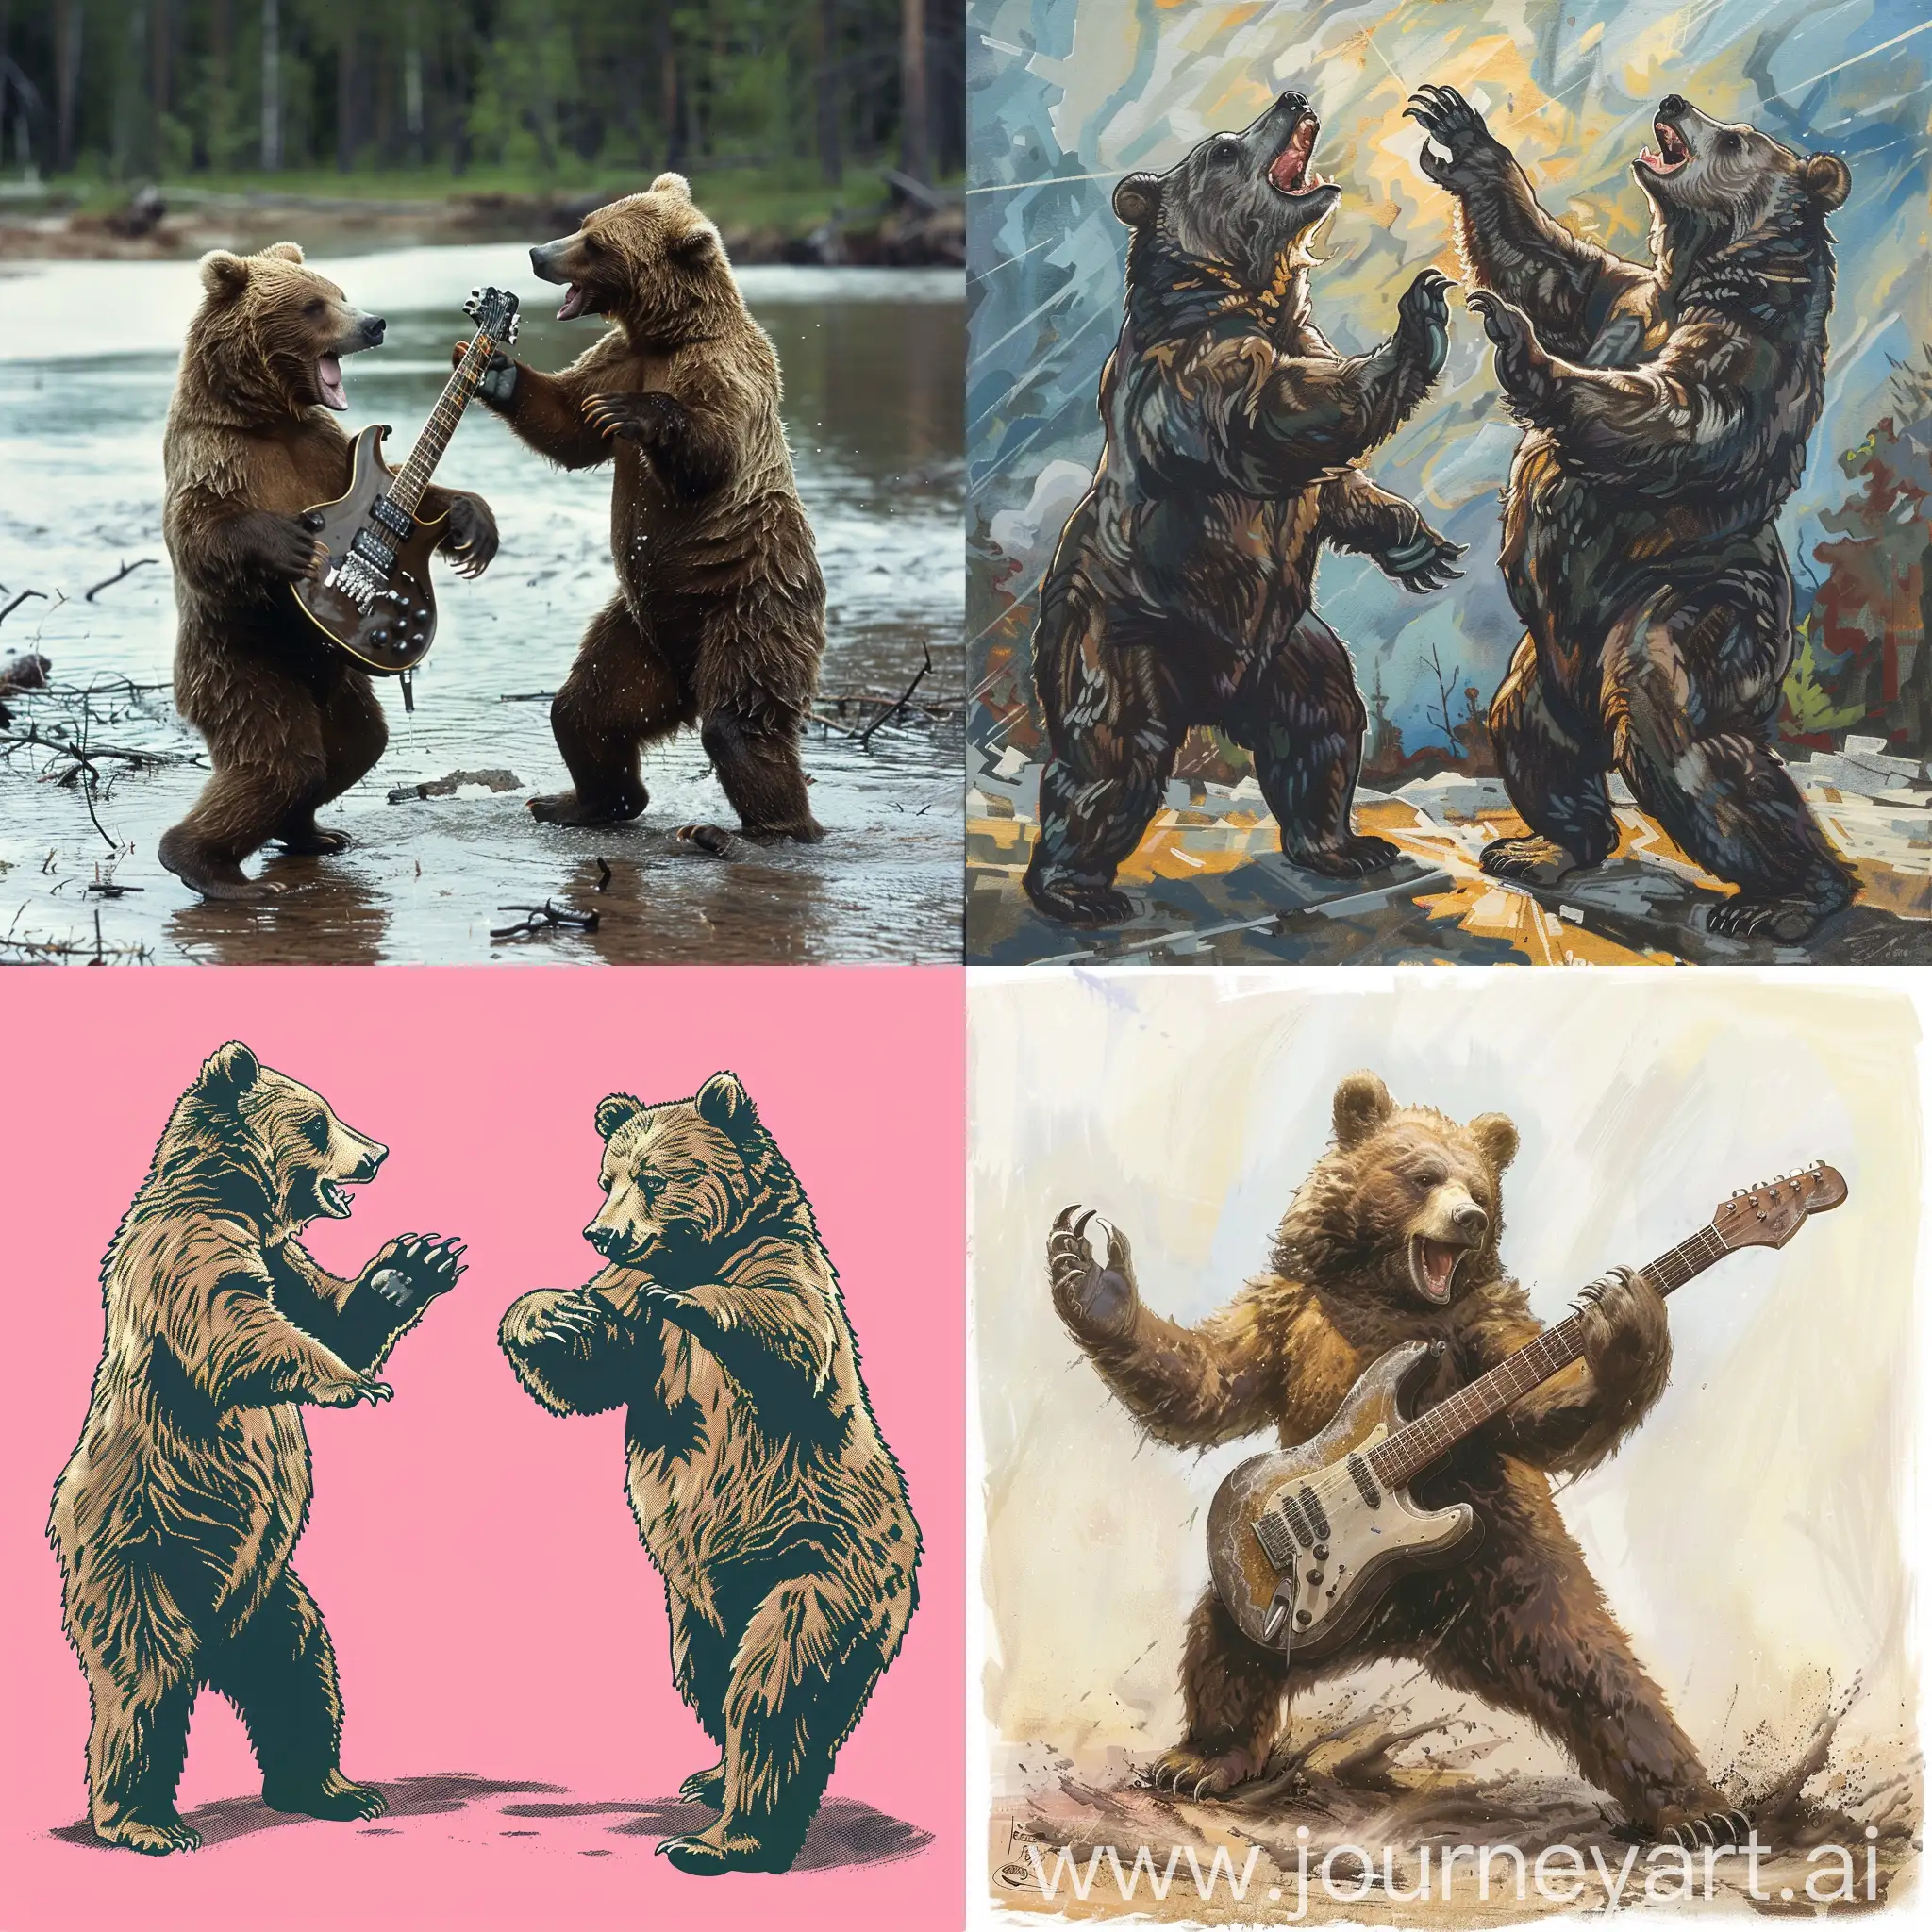 Energetic-Metalloving-Bears-Dance-with-Intensity